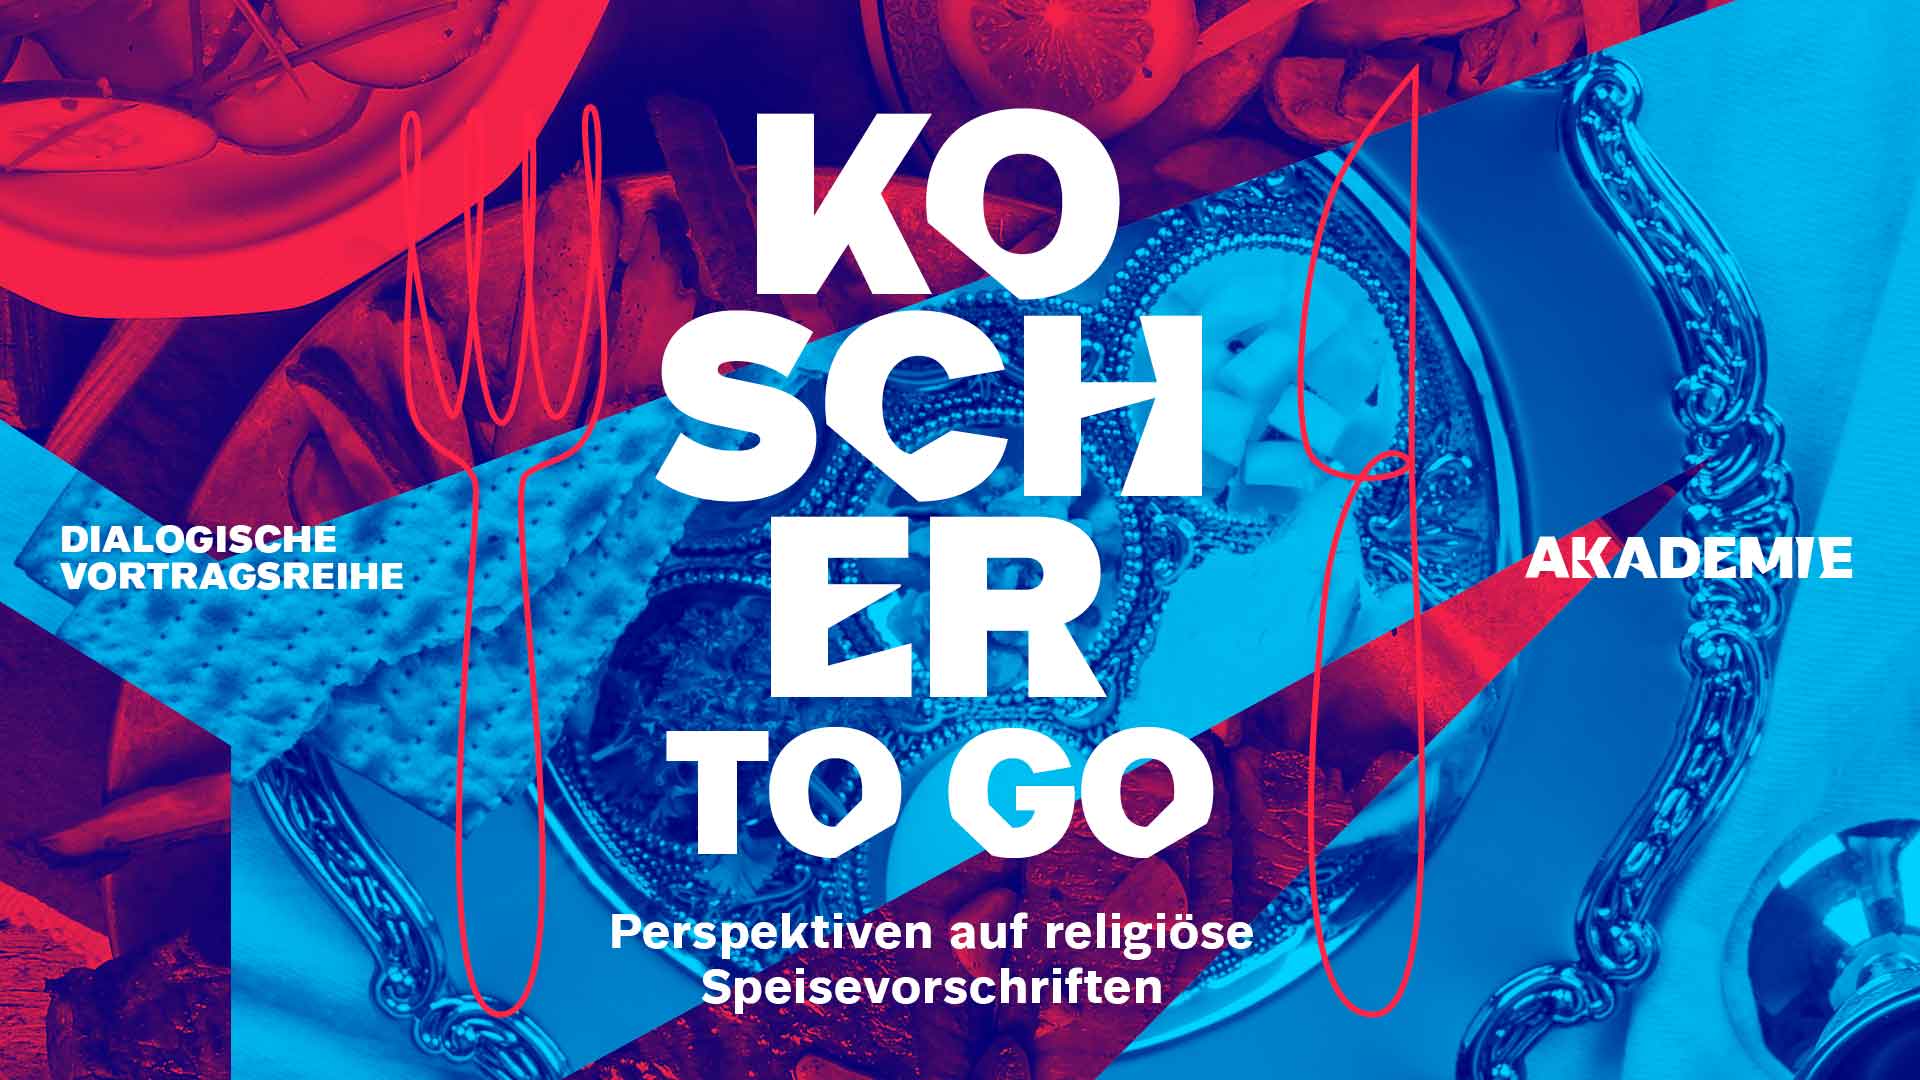 Blau-rote Collage von Essen, im Vordergrund der Text "Kosher to-go".